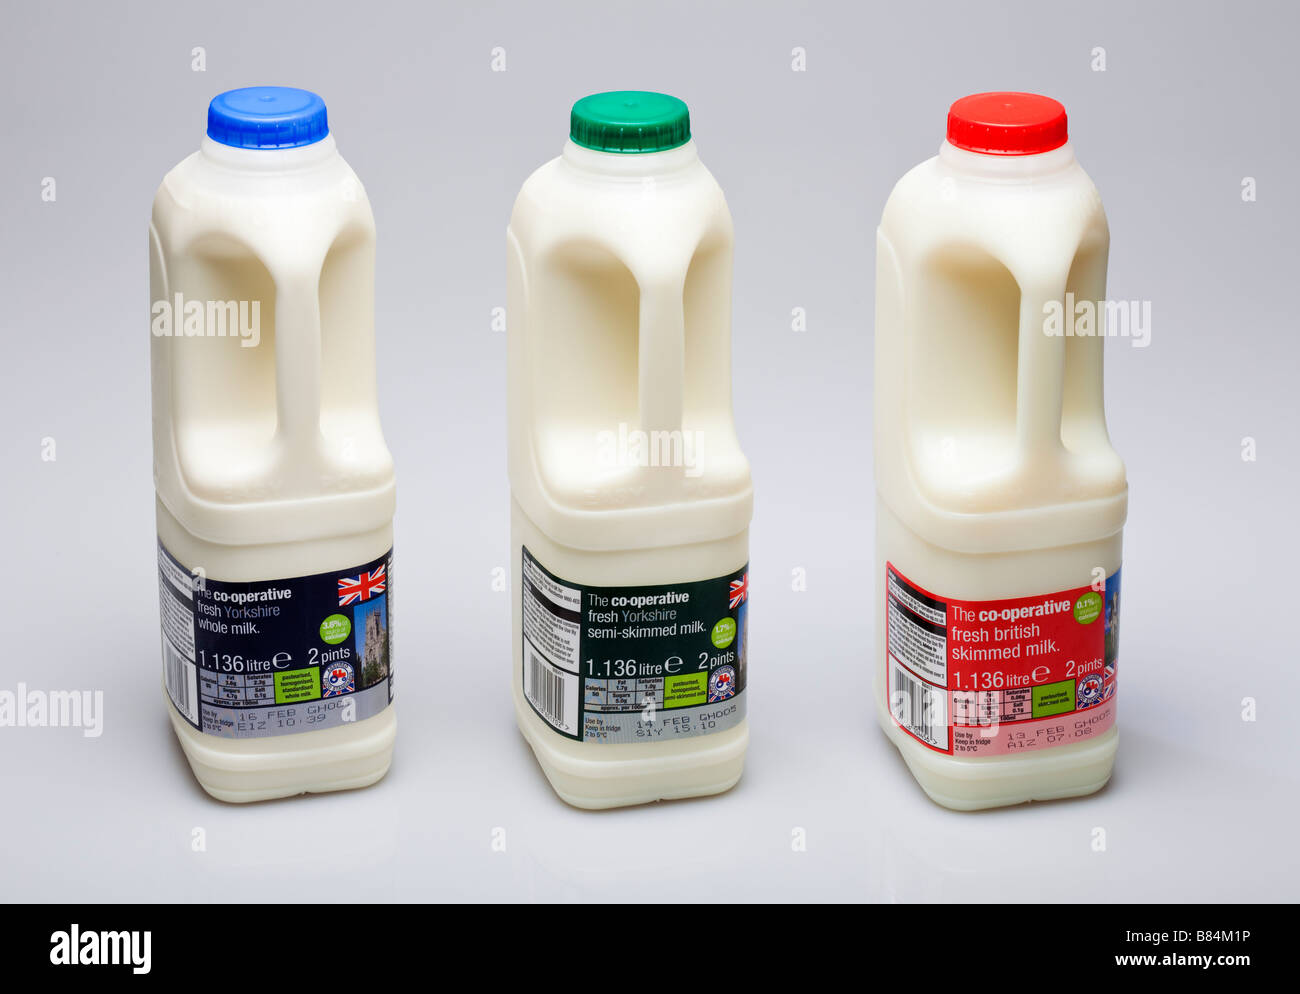 Milk - Full fat semi skimmed and skimmed milk cartons UK on white Stock Photo